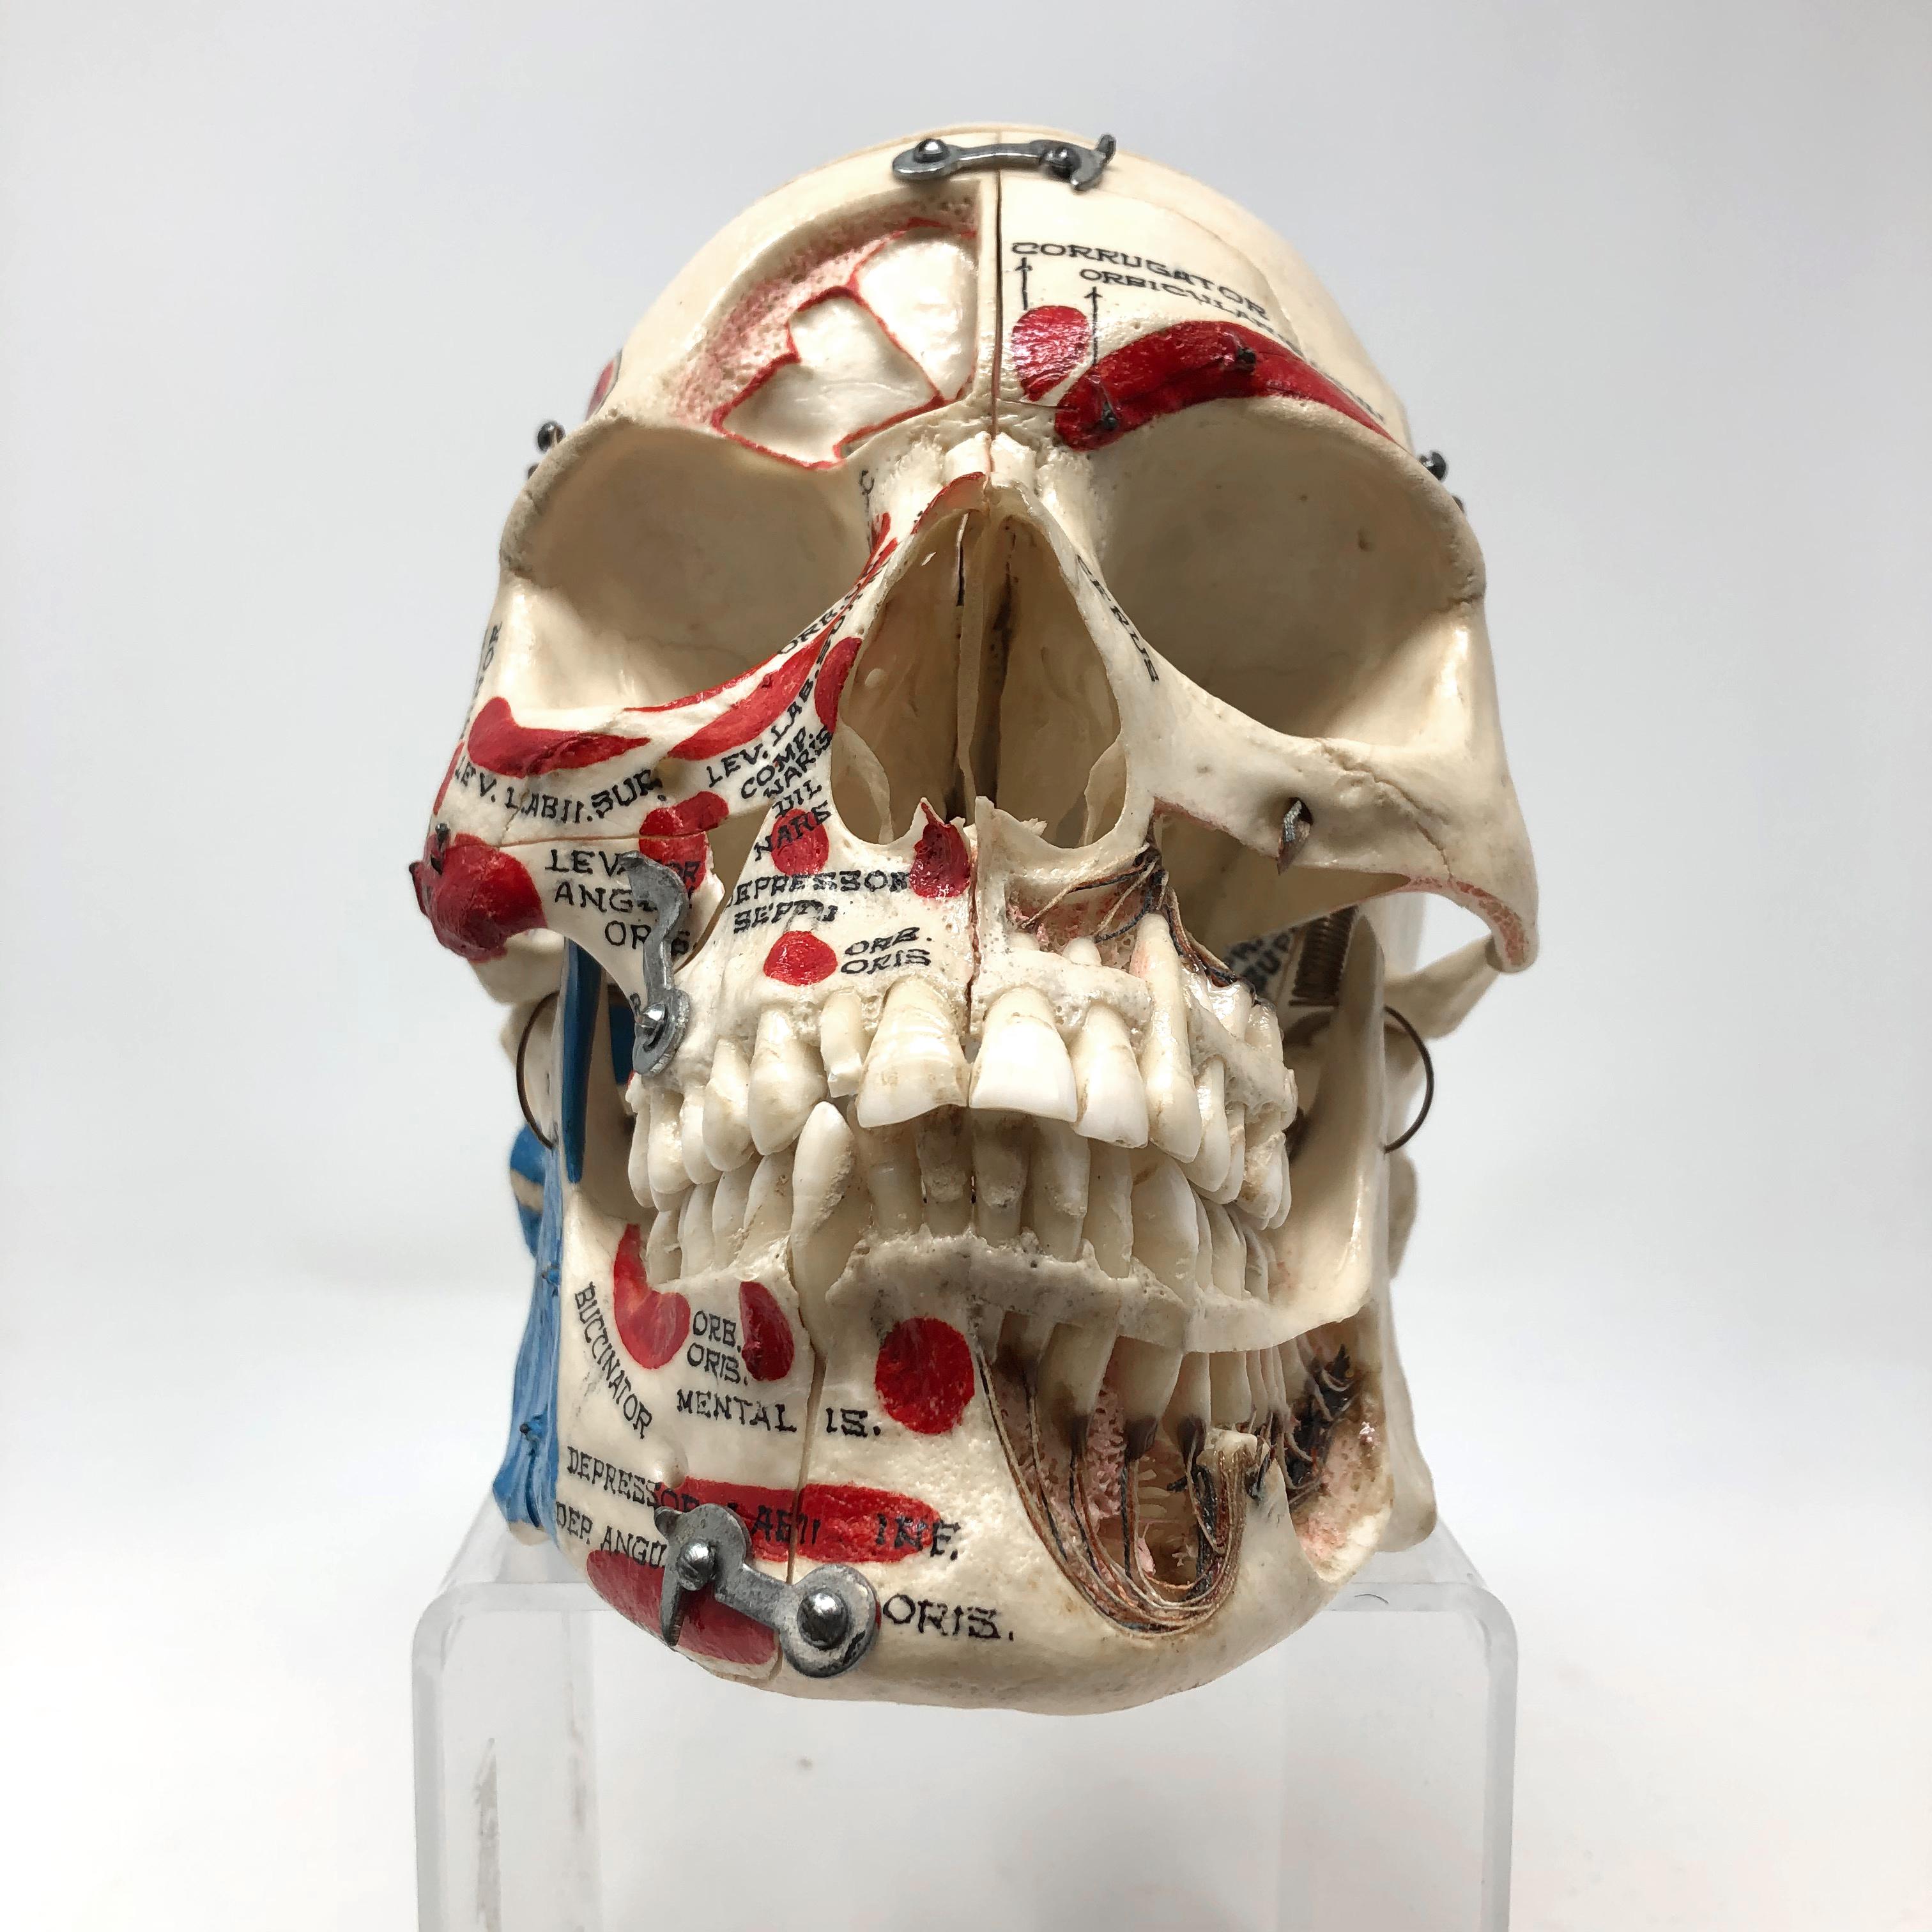 Hergestellt von der legendären Medizintechnikfirma Kilgore International:: ist dies ein fortschrittlicher anatomischer Referenzschädel! 

Dieser menschliche Schädel ist ein außergewöhnliches:: authentisches Vintage-Exemplar:: das innen und außen